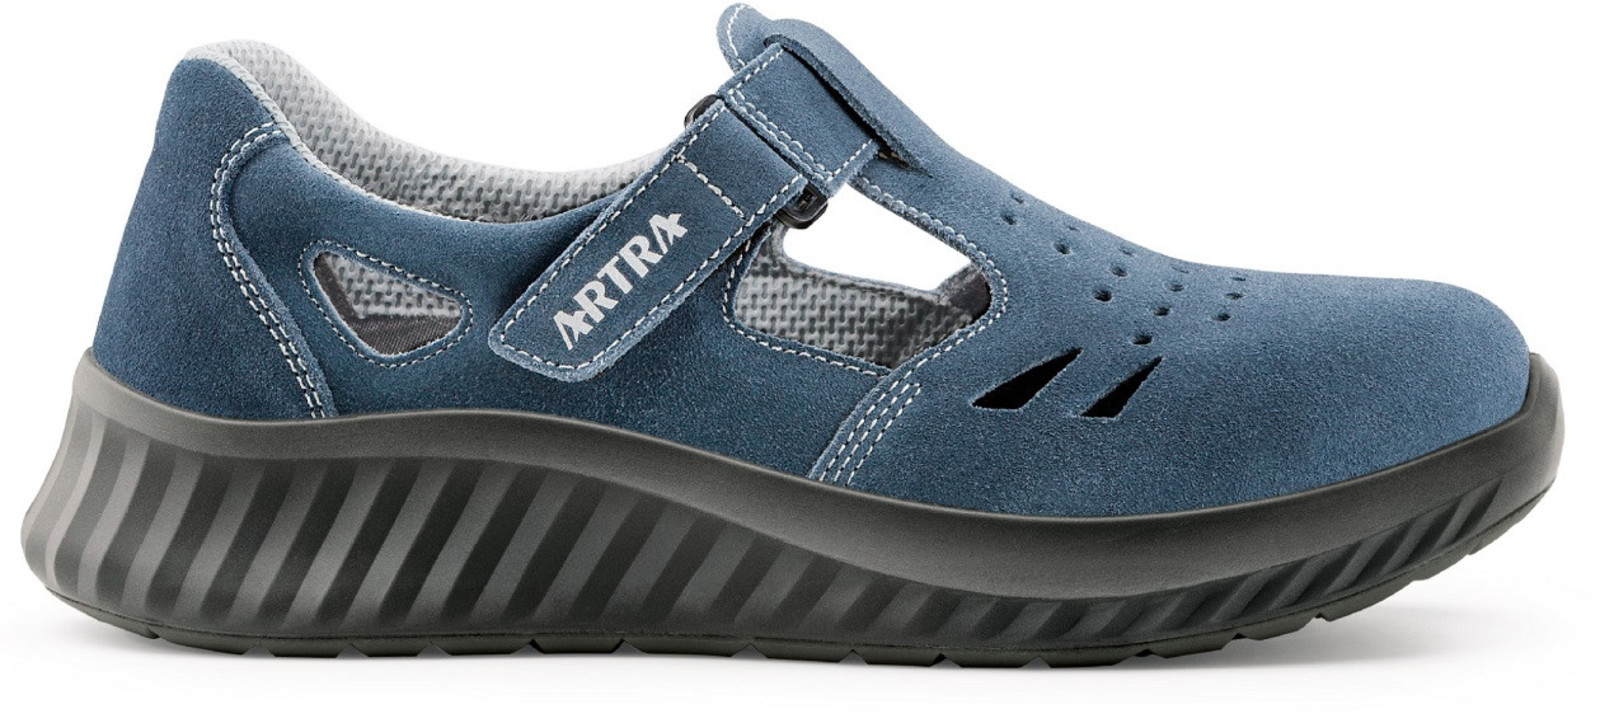 Bezpečnostné sandále Artra Armen 9007 9360 S1 - veľkosť: 46, farba: modrá